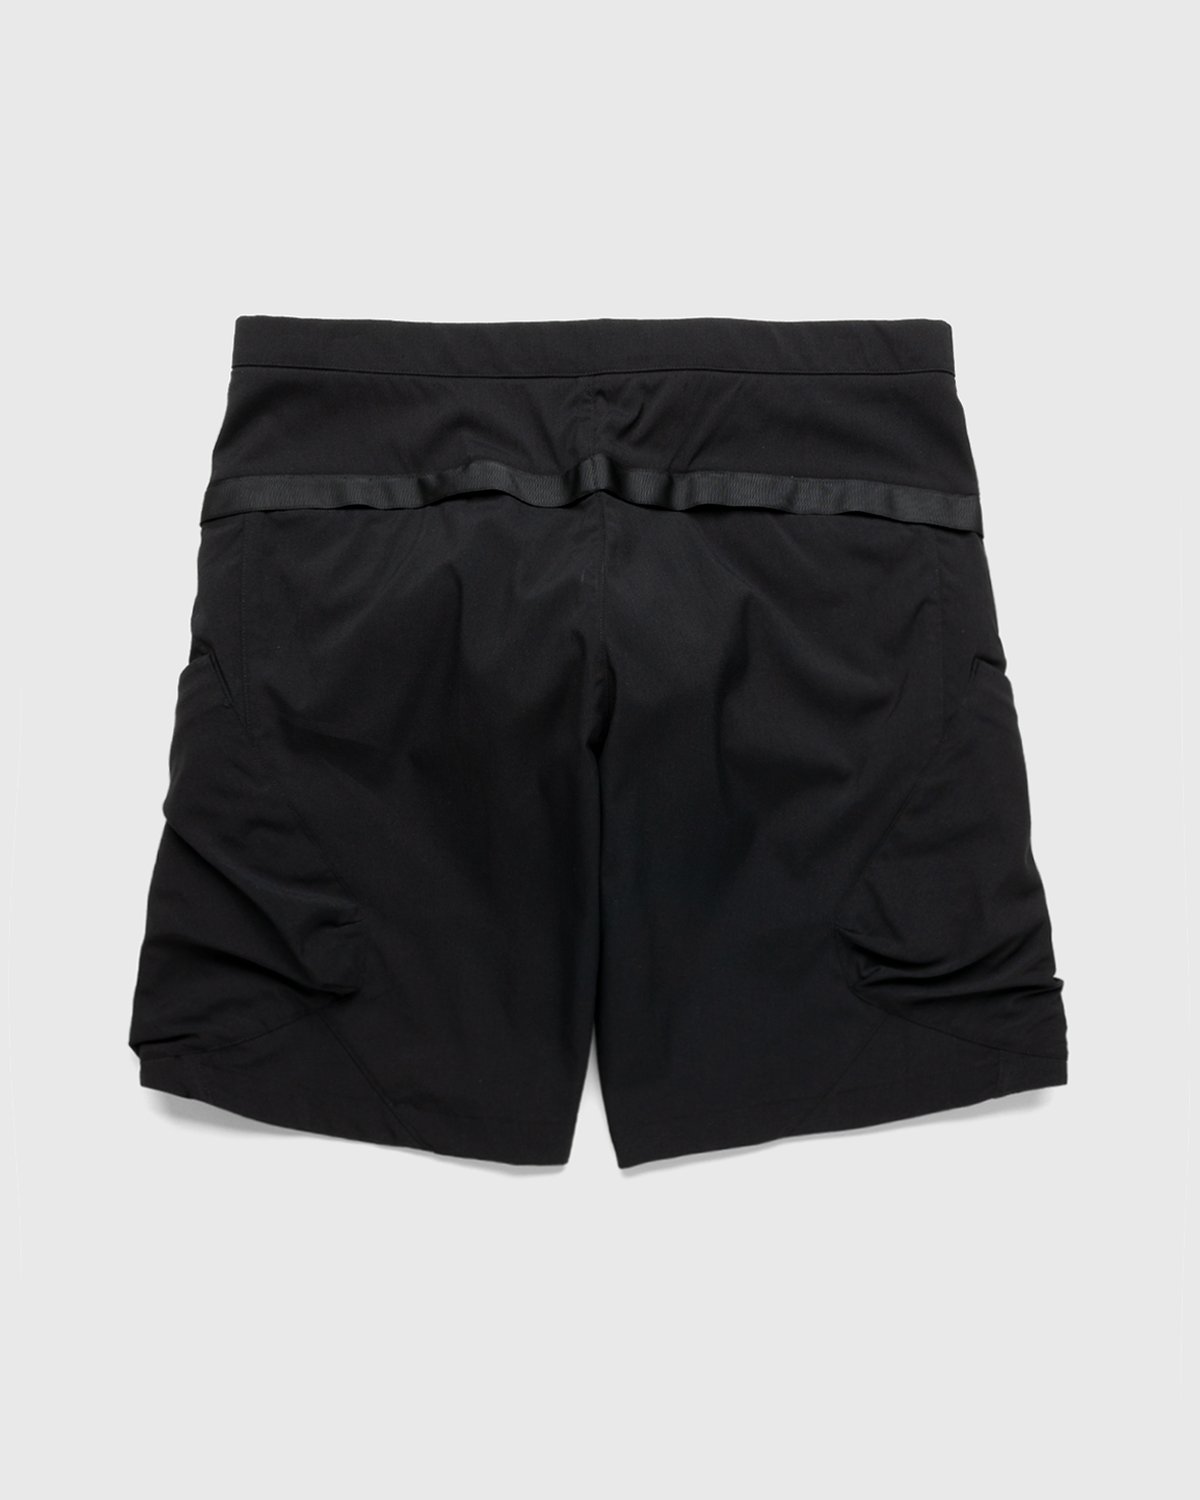 ACRONYM - SP29-M Cargo Shorts Black - Clothing - Black - Image 2